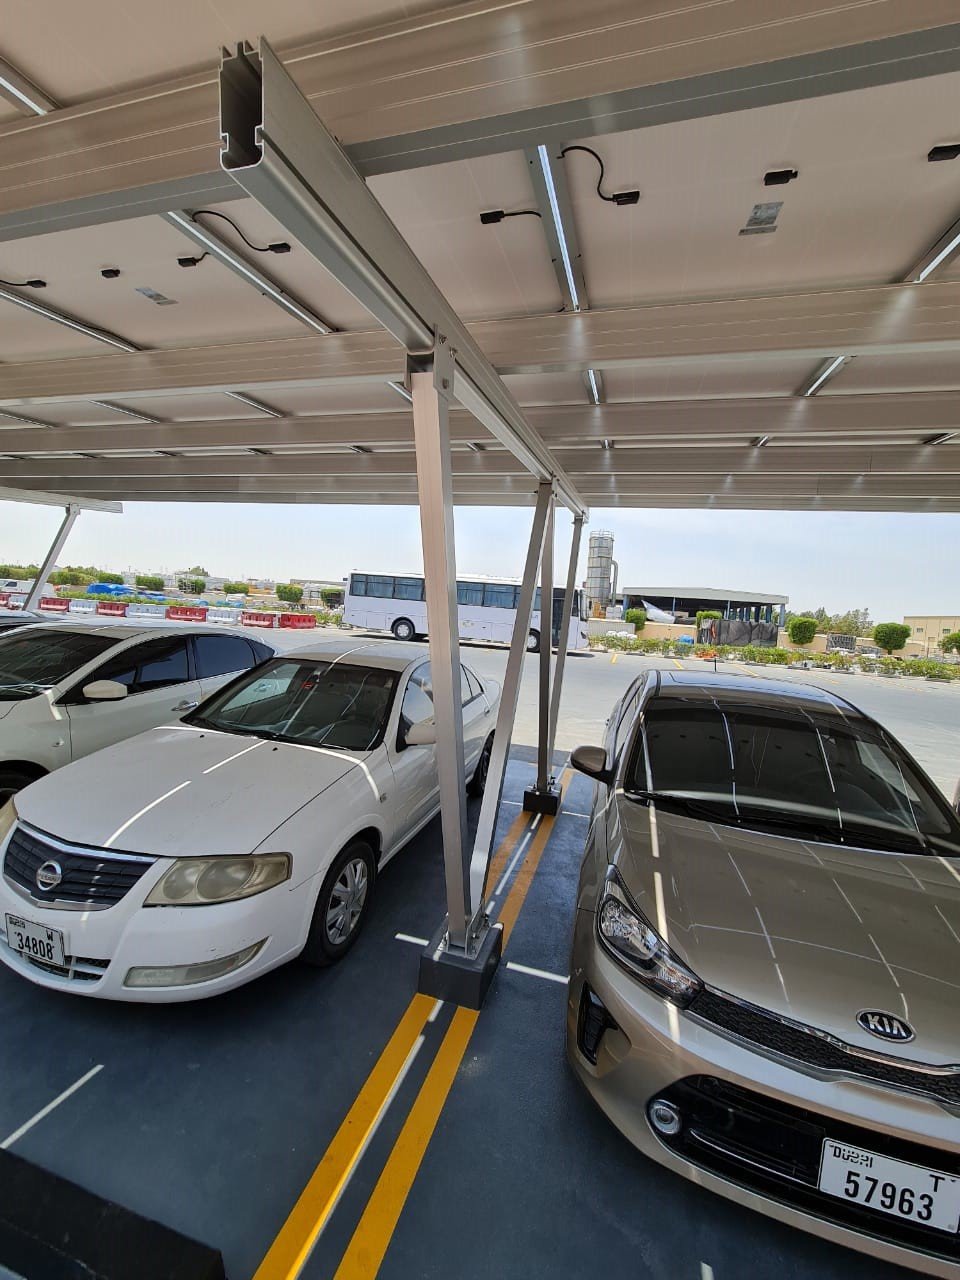 Solar Aluminum Carport project